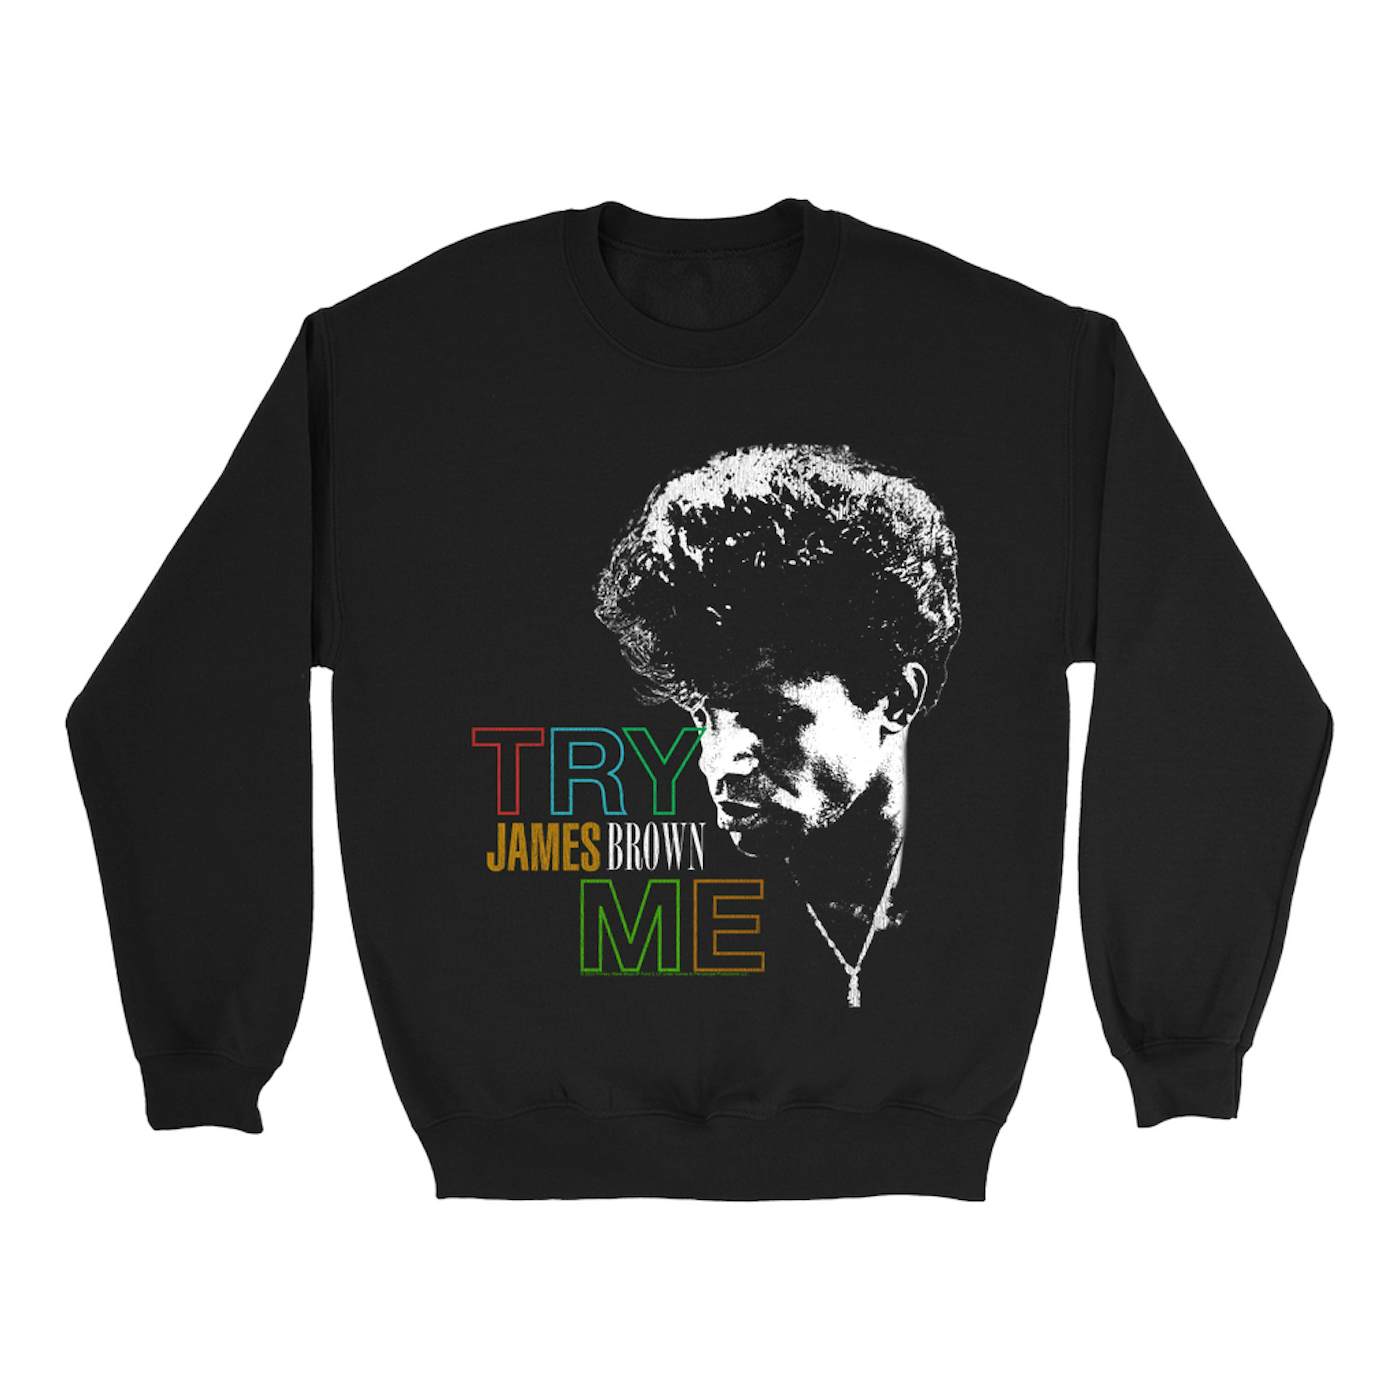 James Brown Sweatshirt | Primary Colors Try Me James Brown Sweatshirt